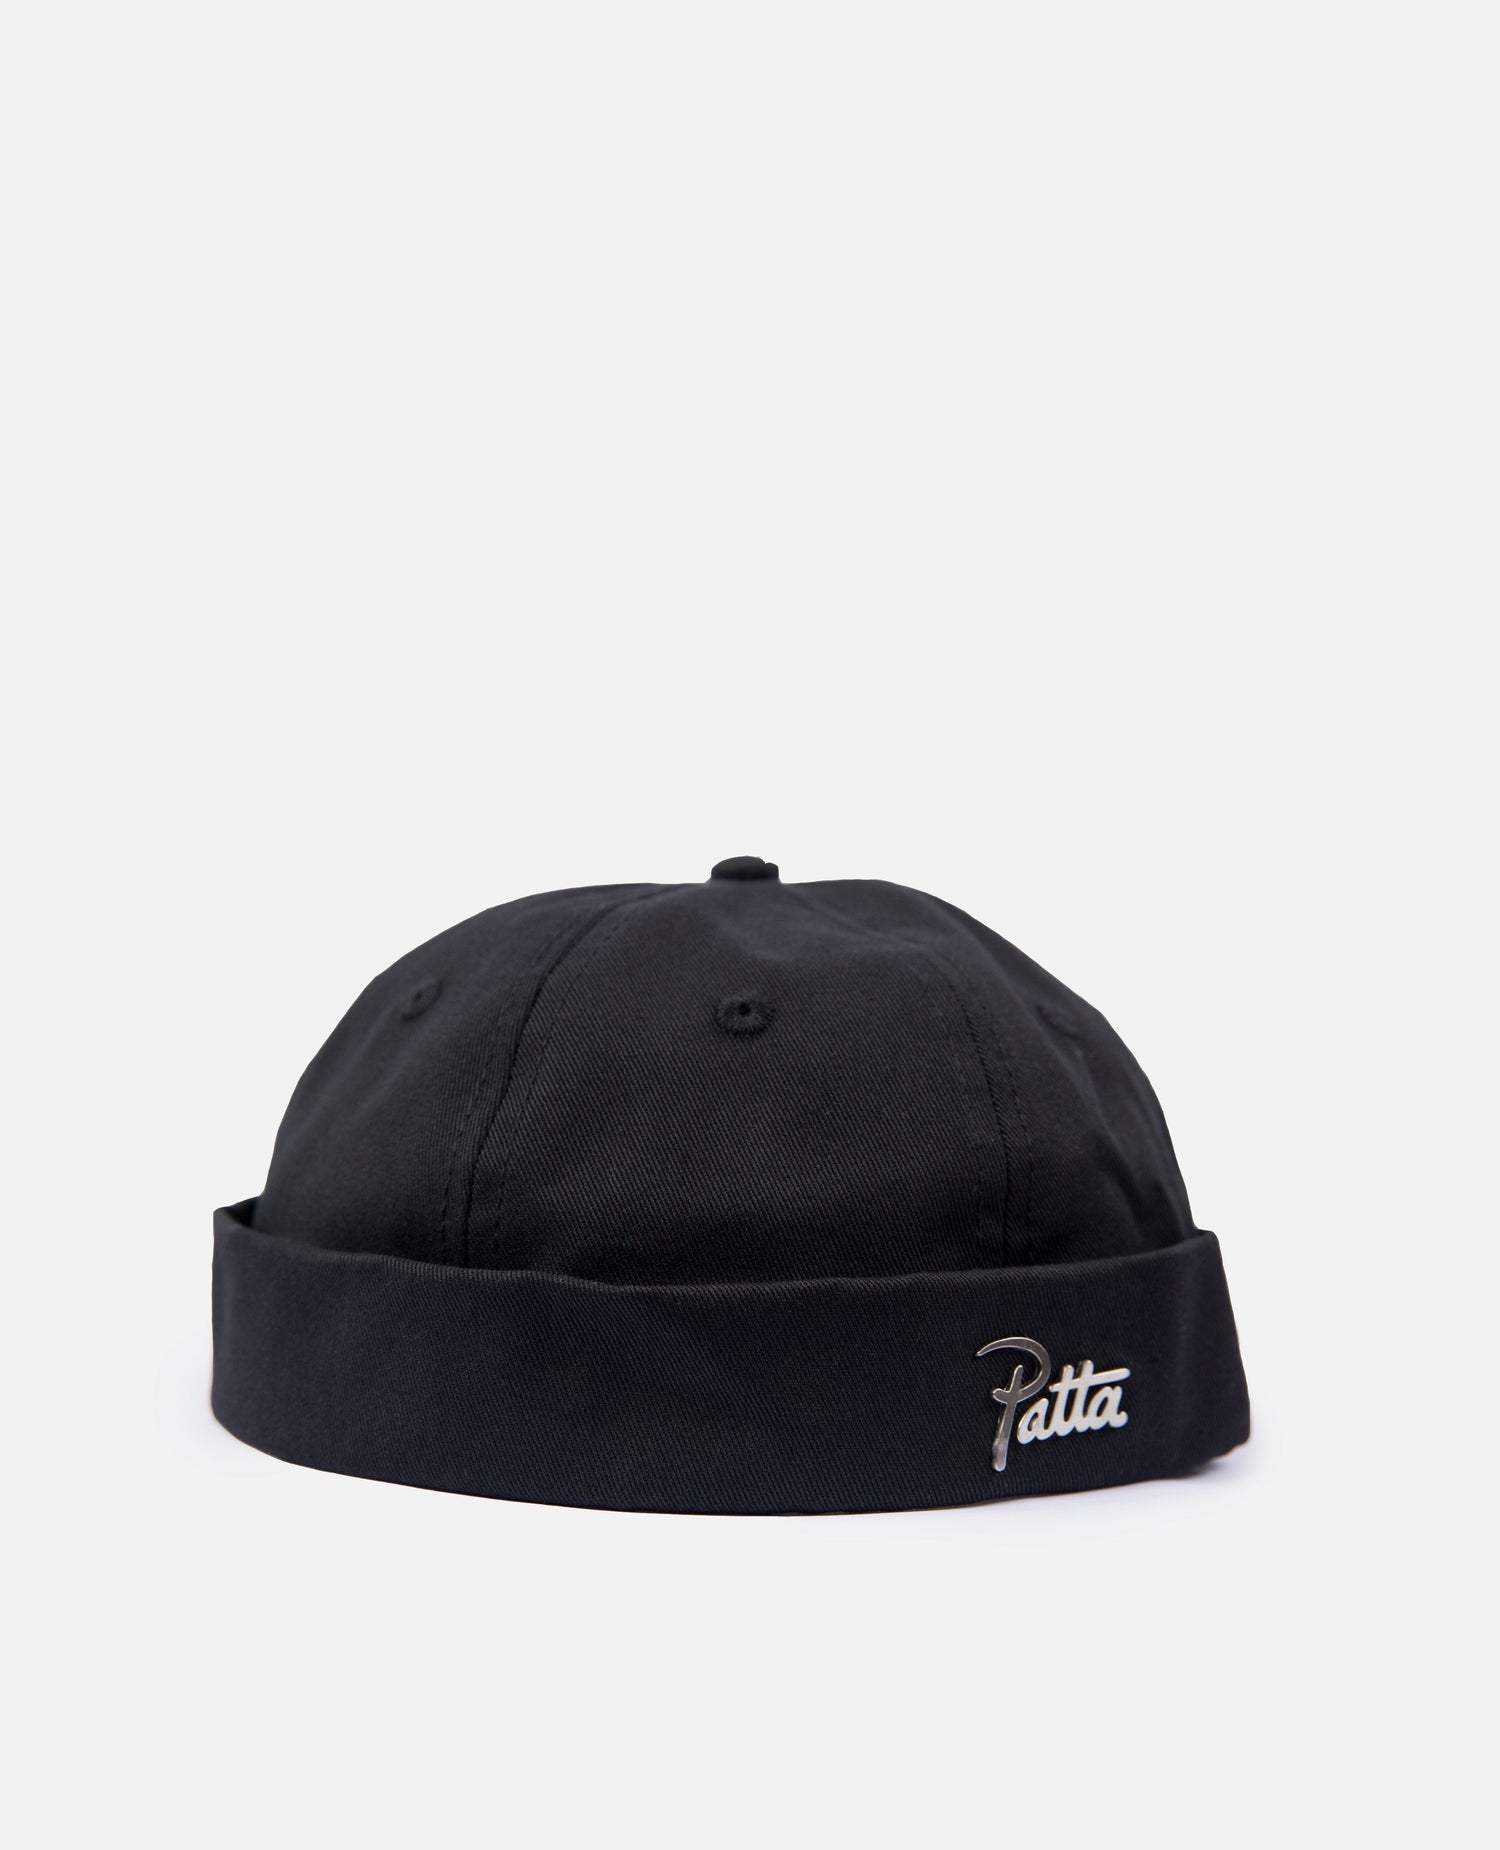 Patta Twill Sailors Hat (Black)